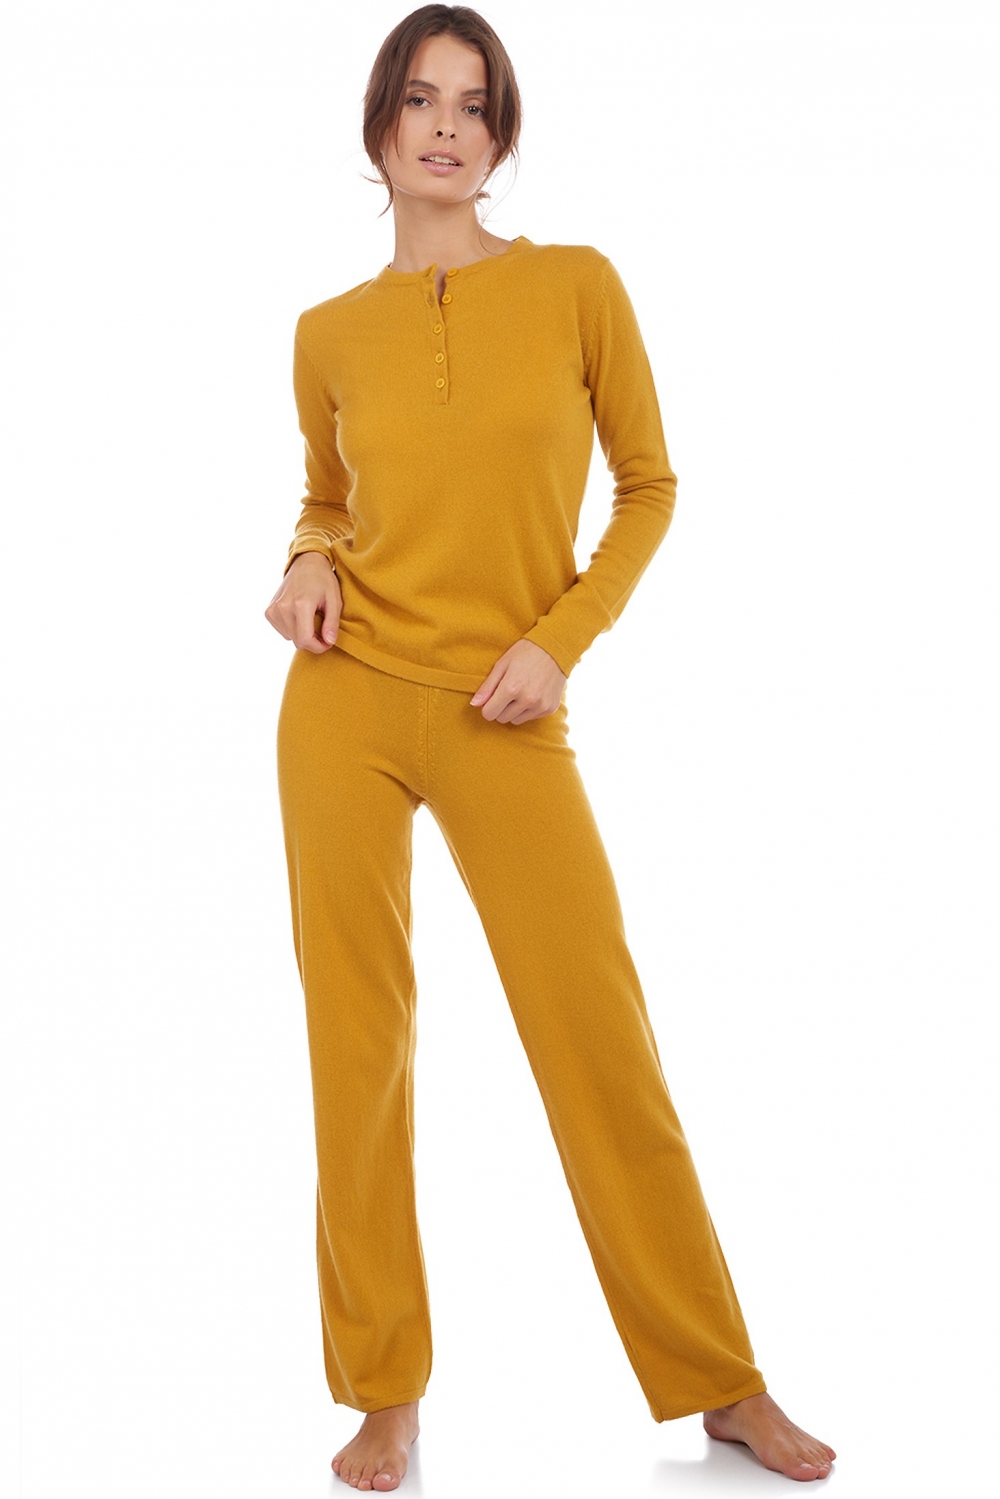 Cachemire pyjama femme loan moutarde 3xl